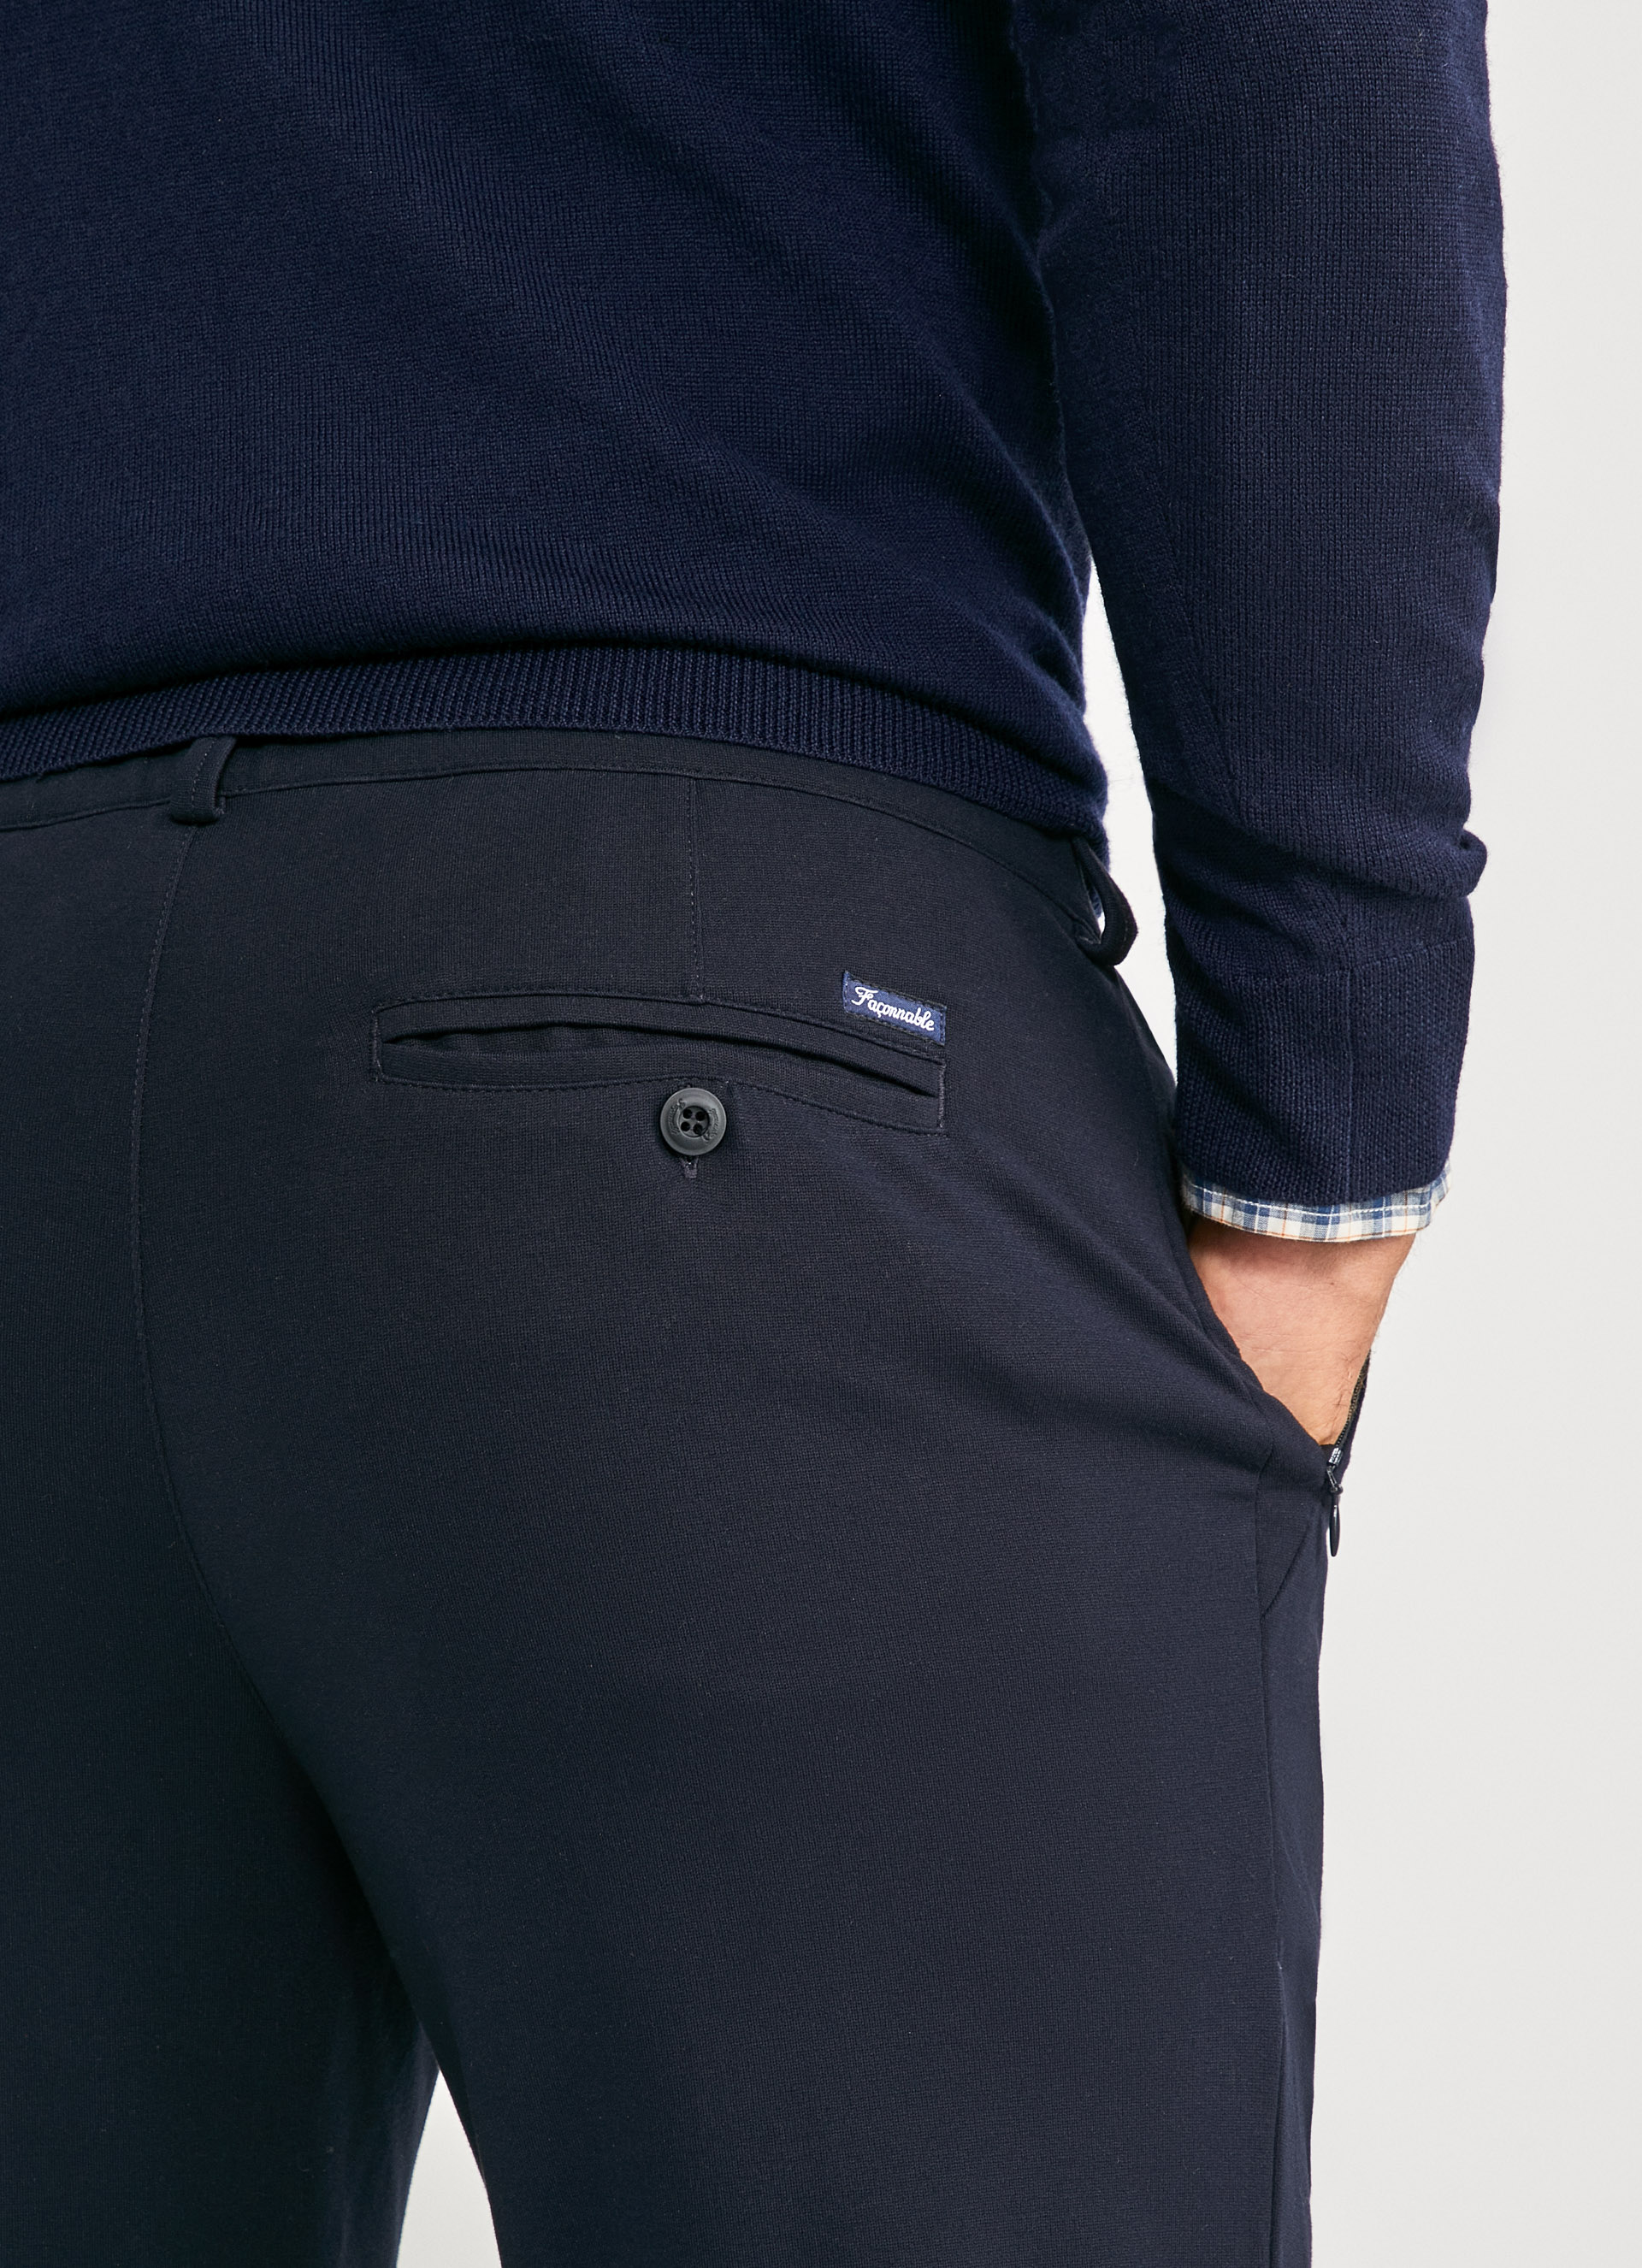 Explore the Men’s Trousers Collection | Façonnable